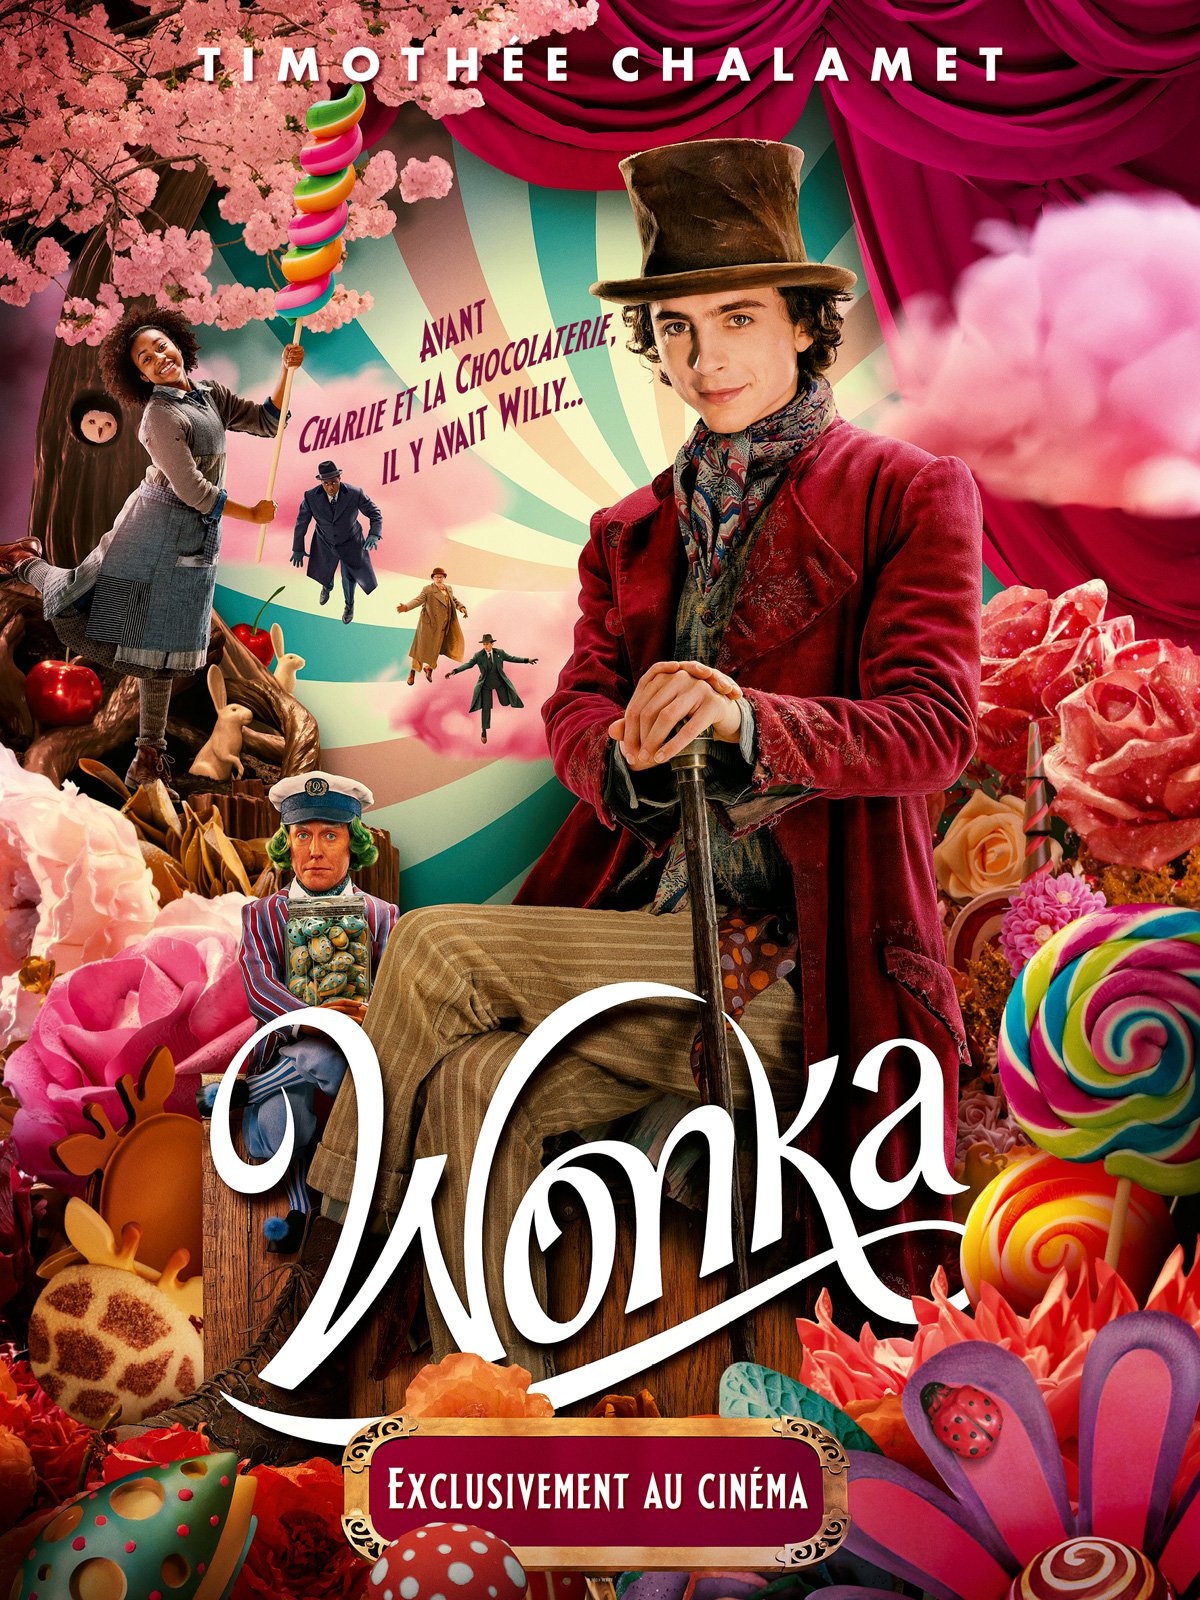 Cinémas et séances du film Wonka à CarryleRouet (13620) AlloCiné